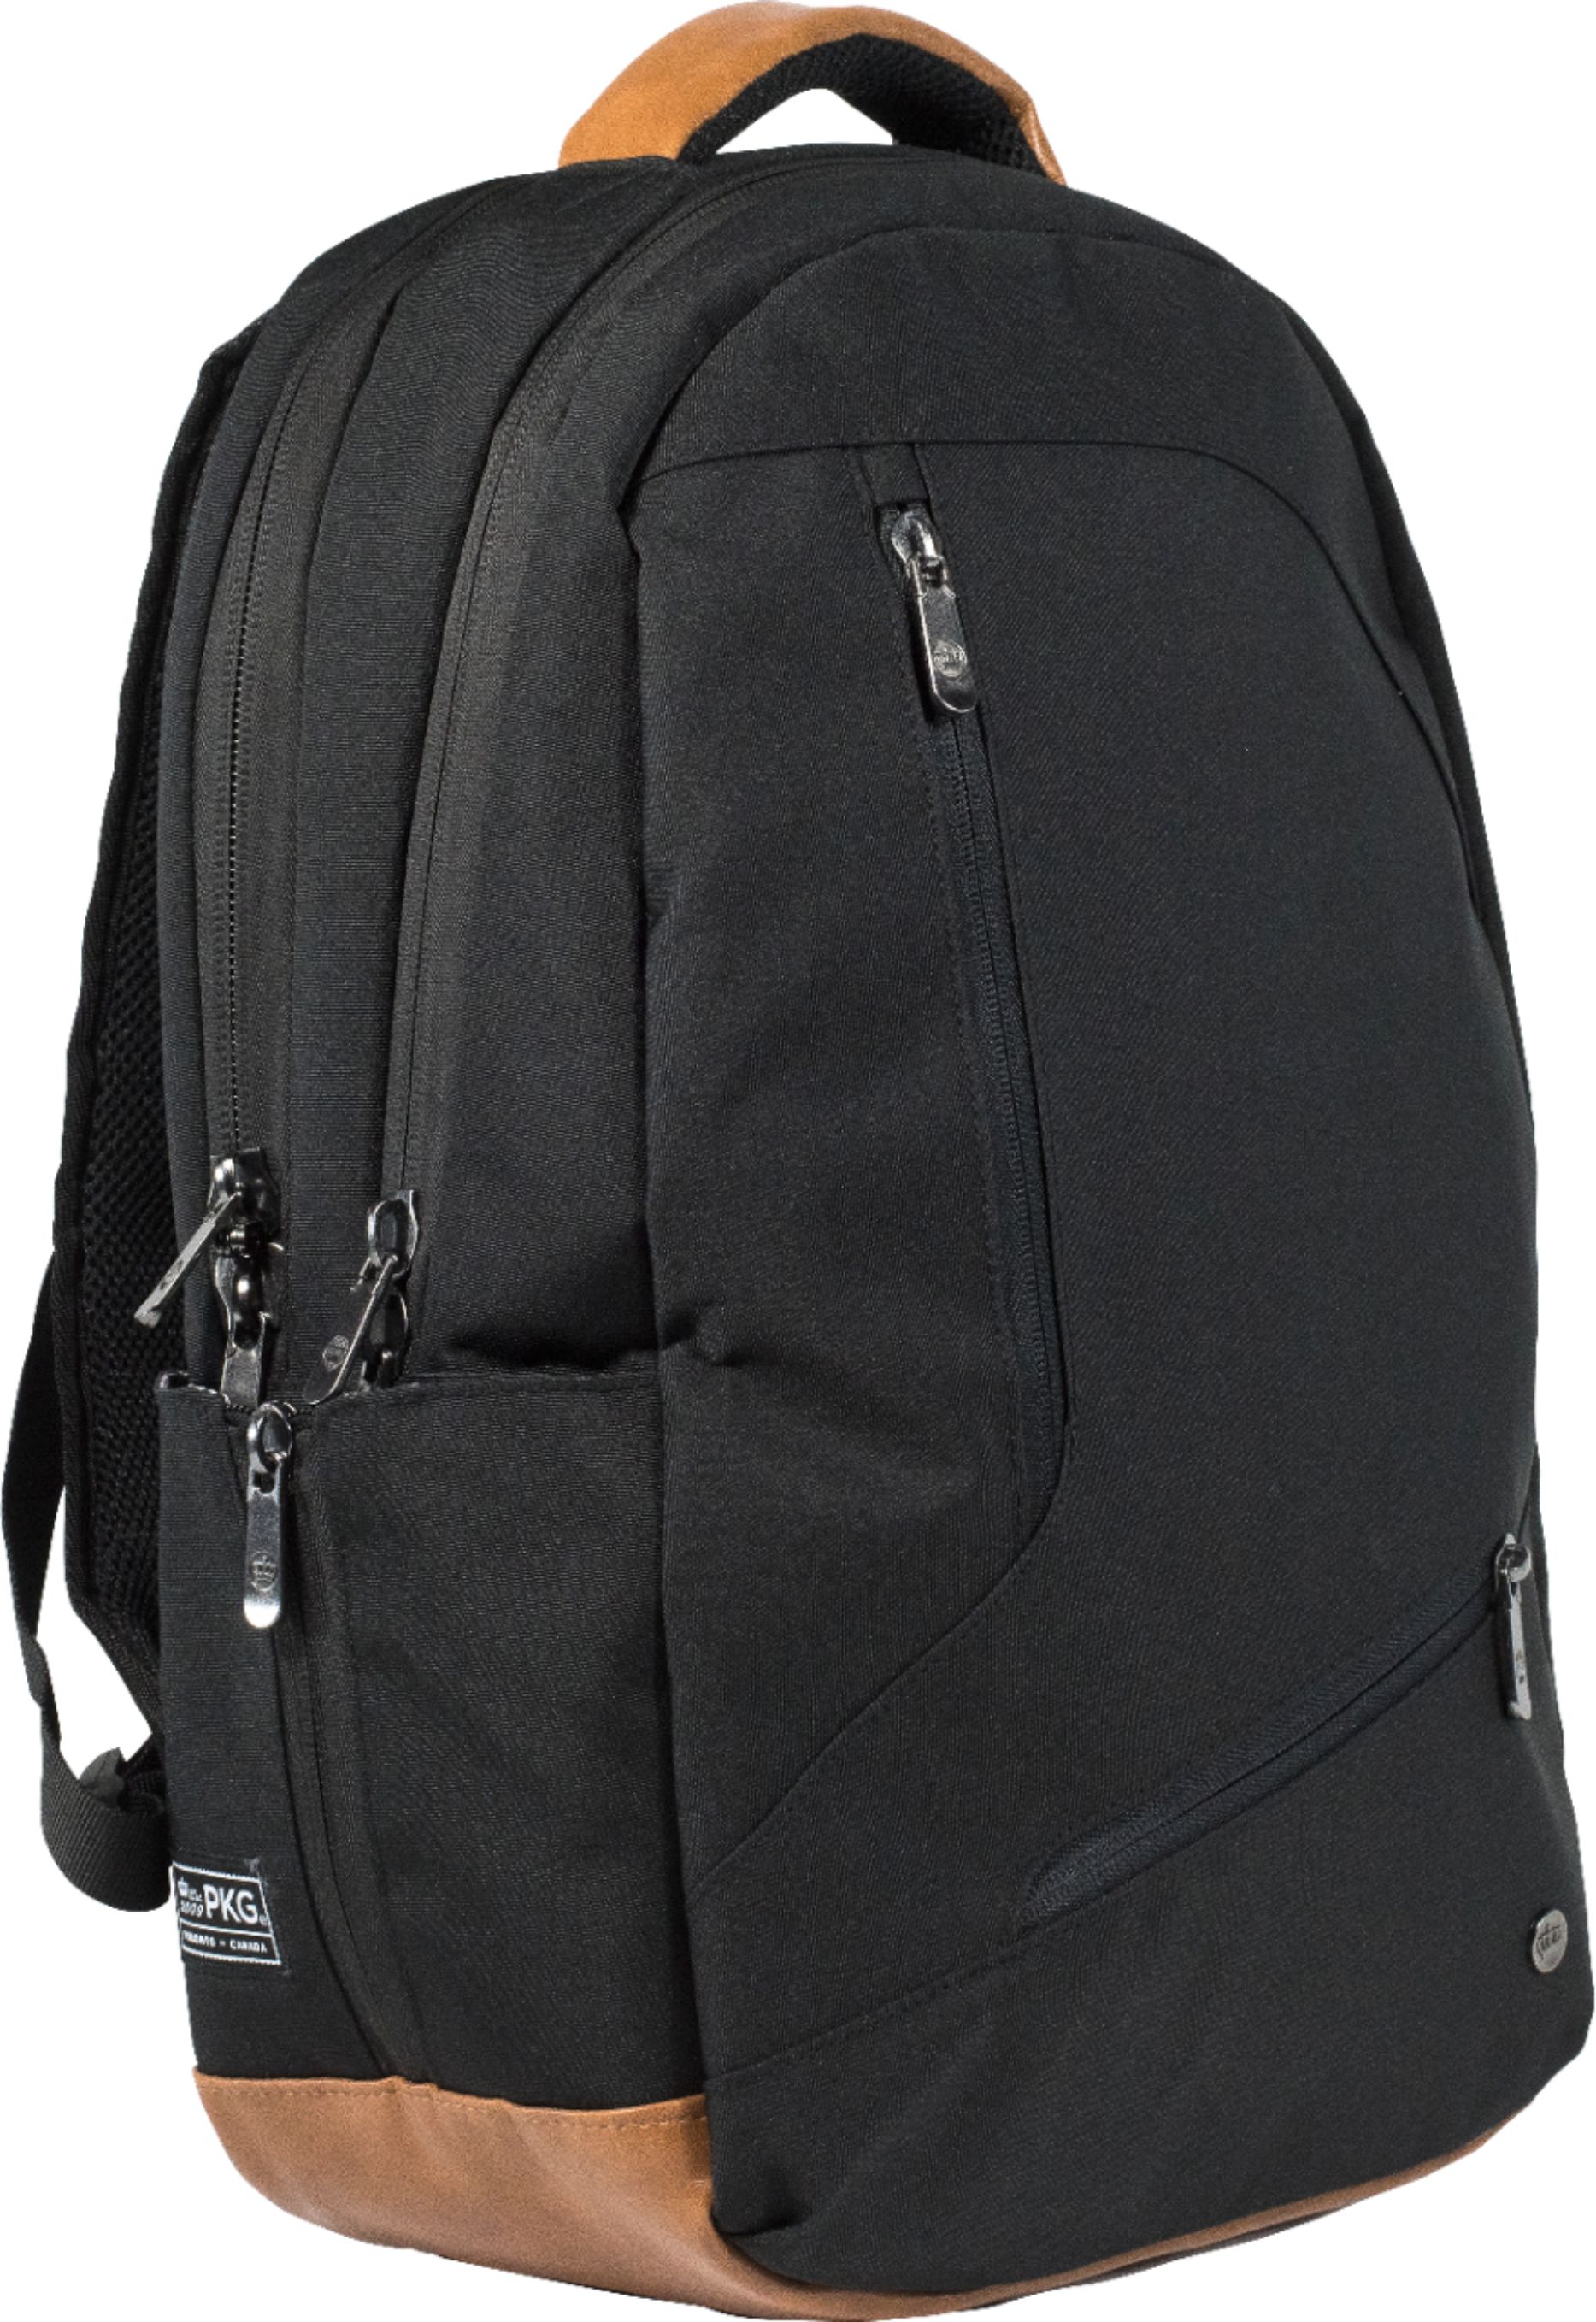 Customer Reviews: PKG Backpack for 16